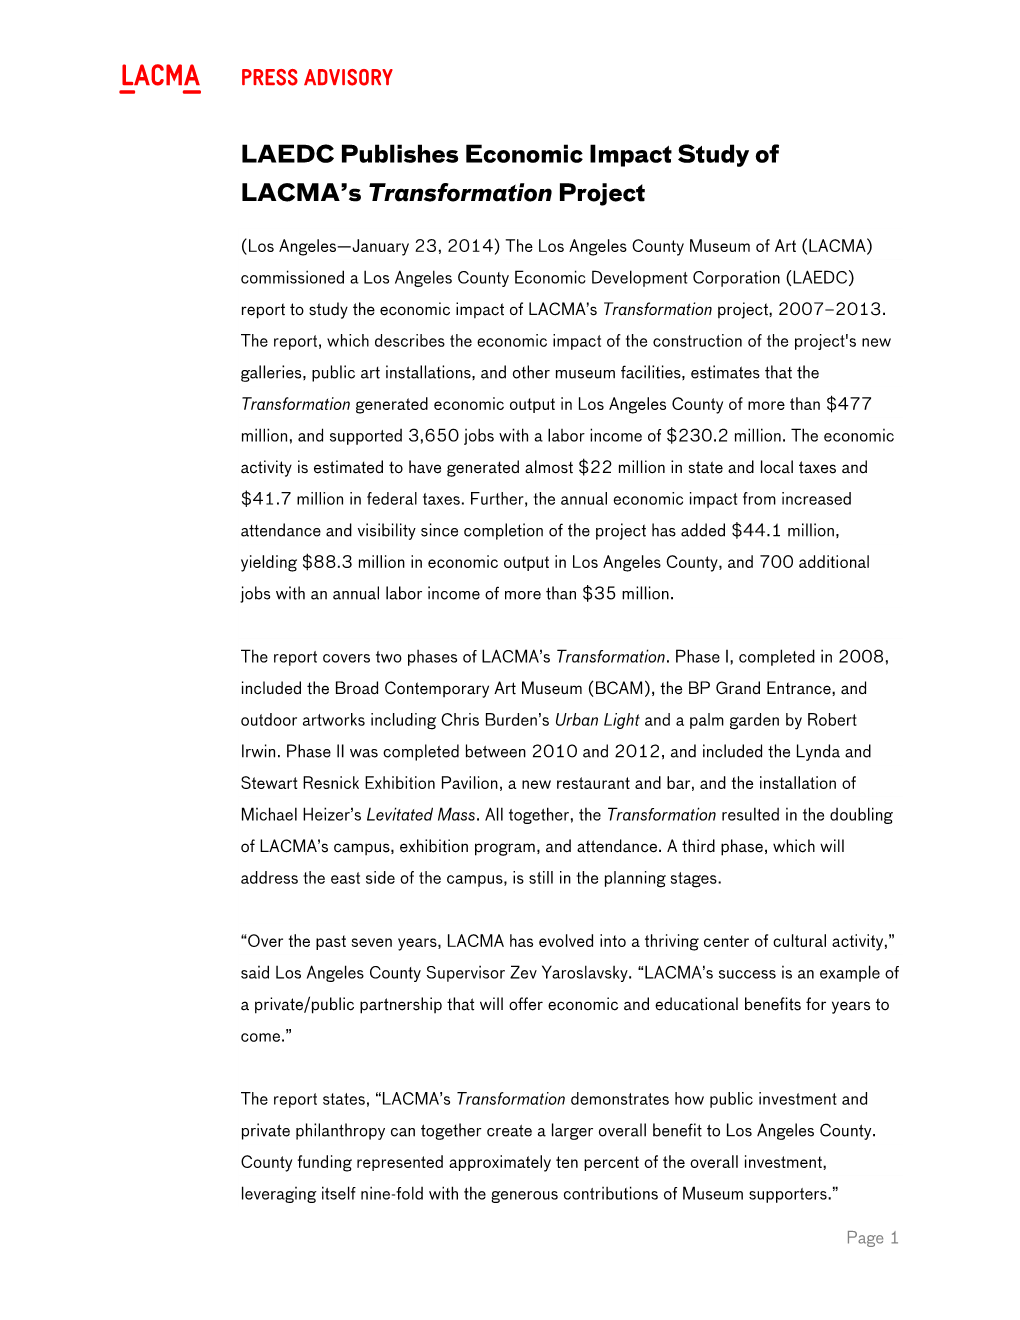 Press Advisory LAEDC Publishes Economic Impact Study of LACMA's